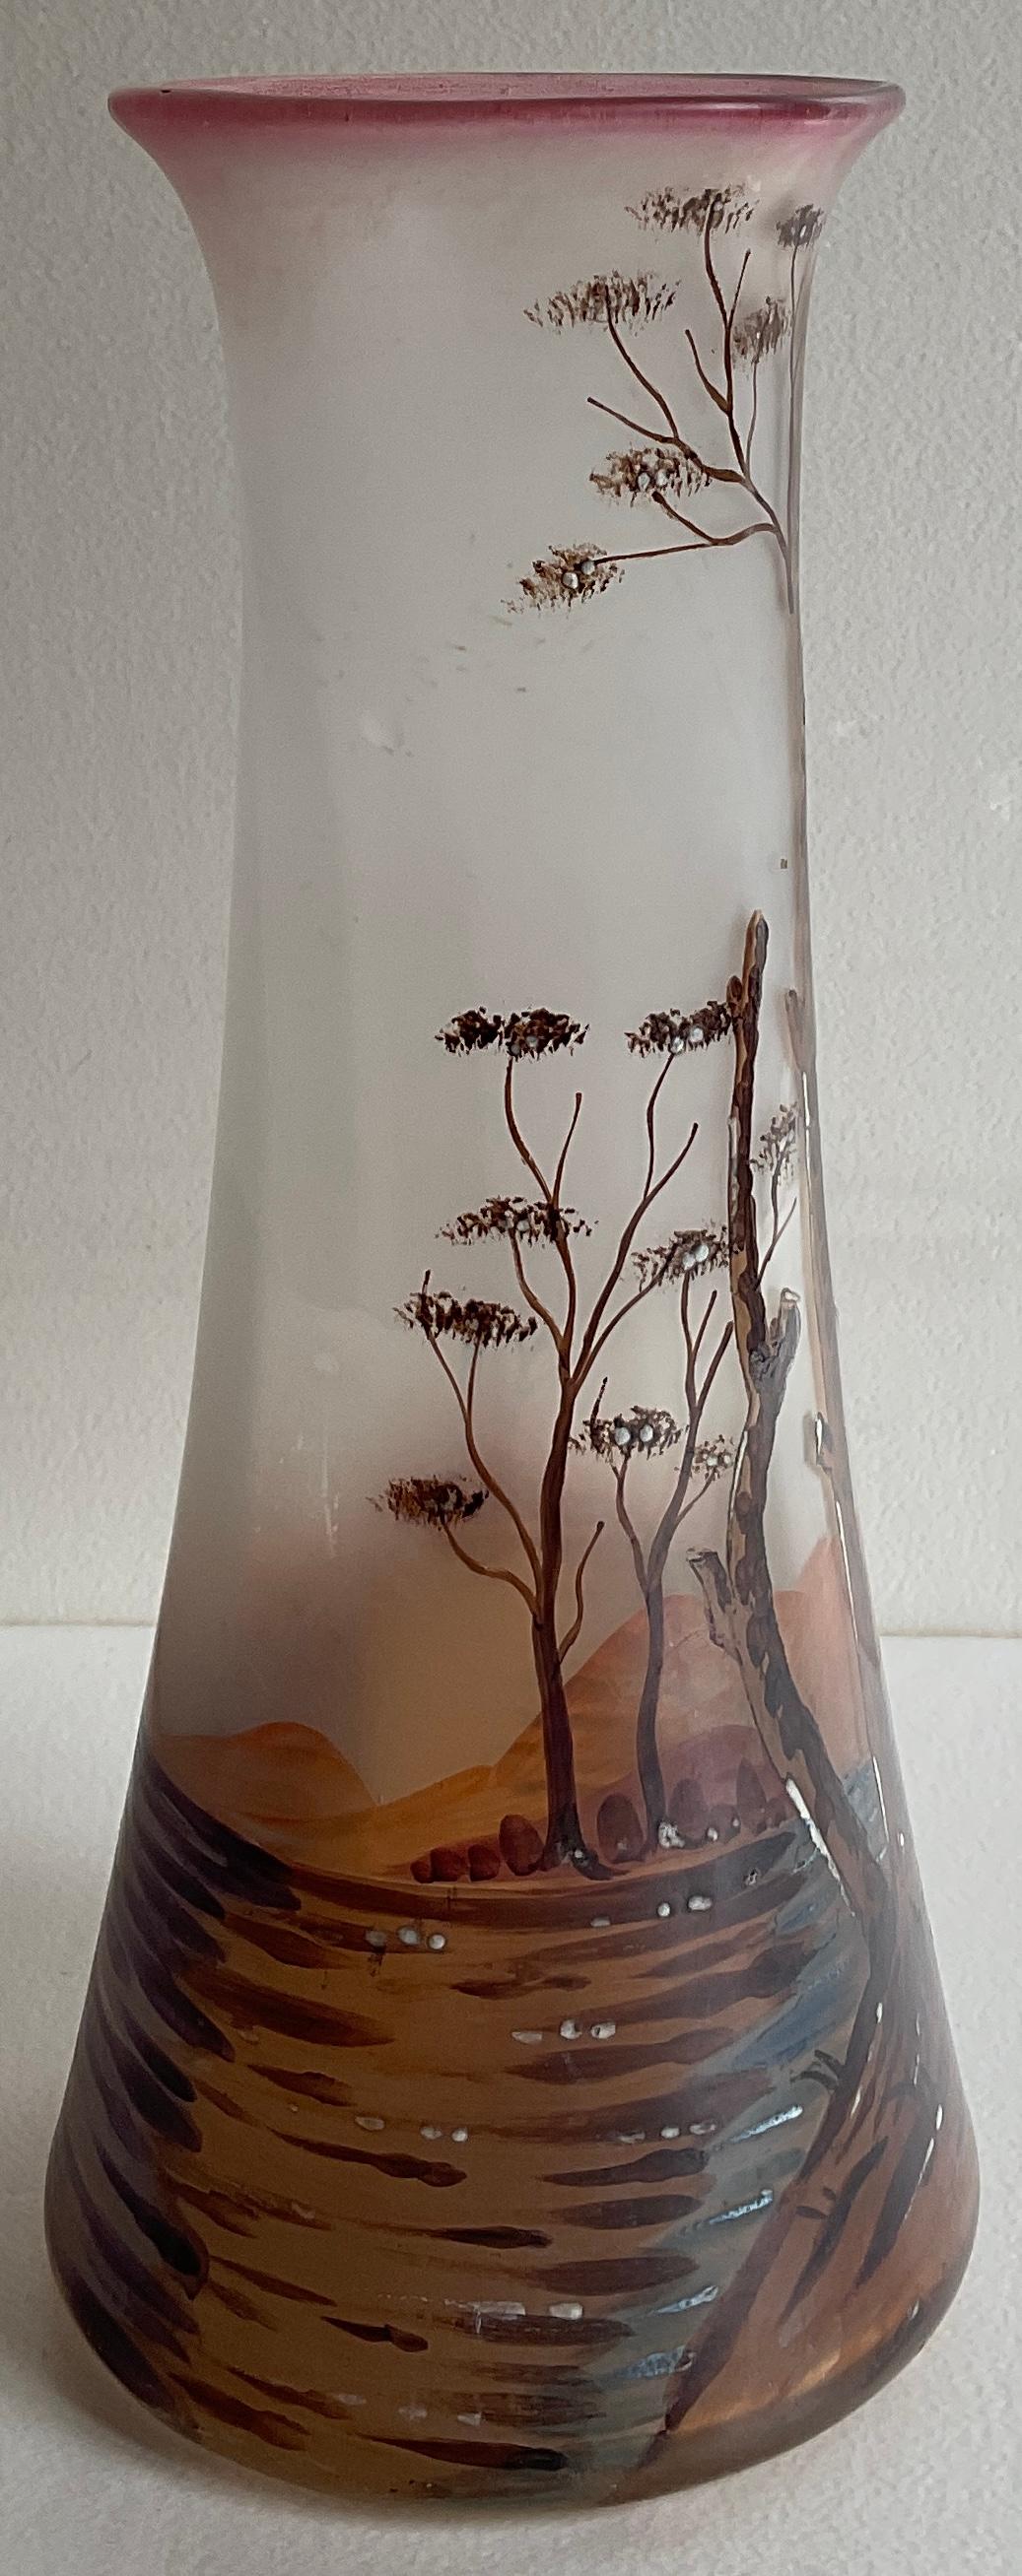 Eine schöne französische Vase aus emailliertem Glas aus der Zeit des Jugendstils, ca. 1930.  Die detailreichen Arbeiten stammen von François-Théodore Legras.

Das Rohr dieser Vase ist vergrößert und hat einen dunkelrosa Hintergrund. Es ist mit